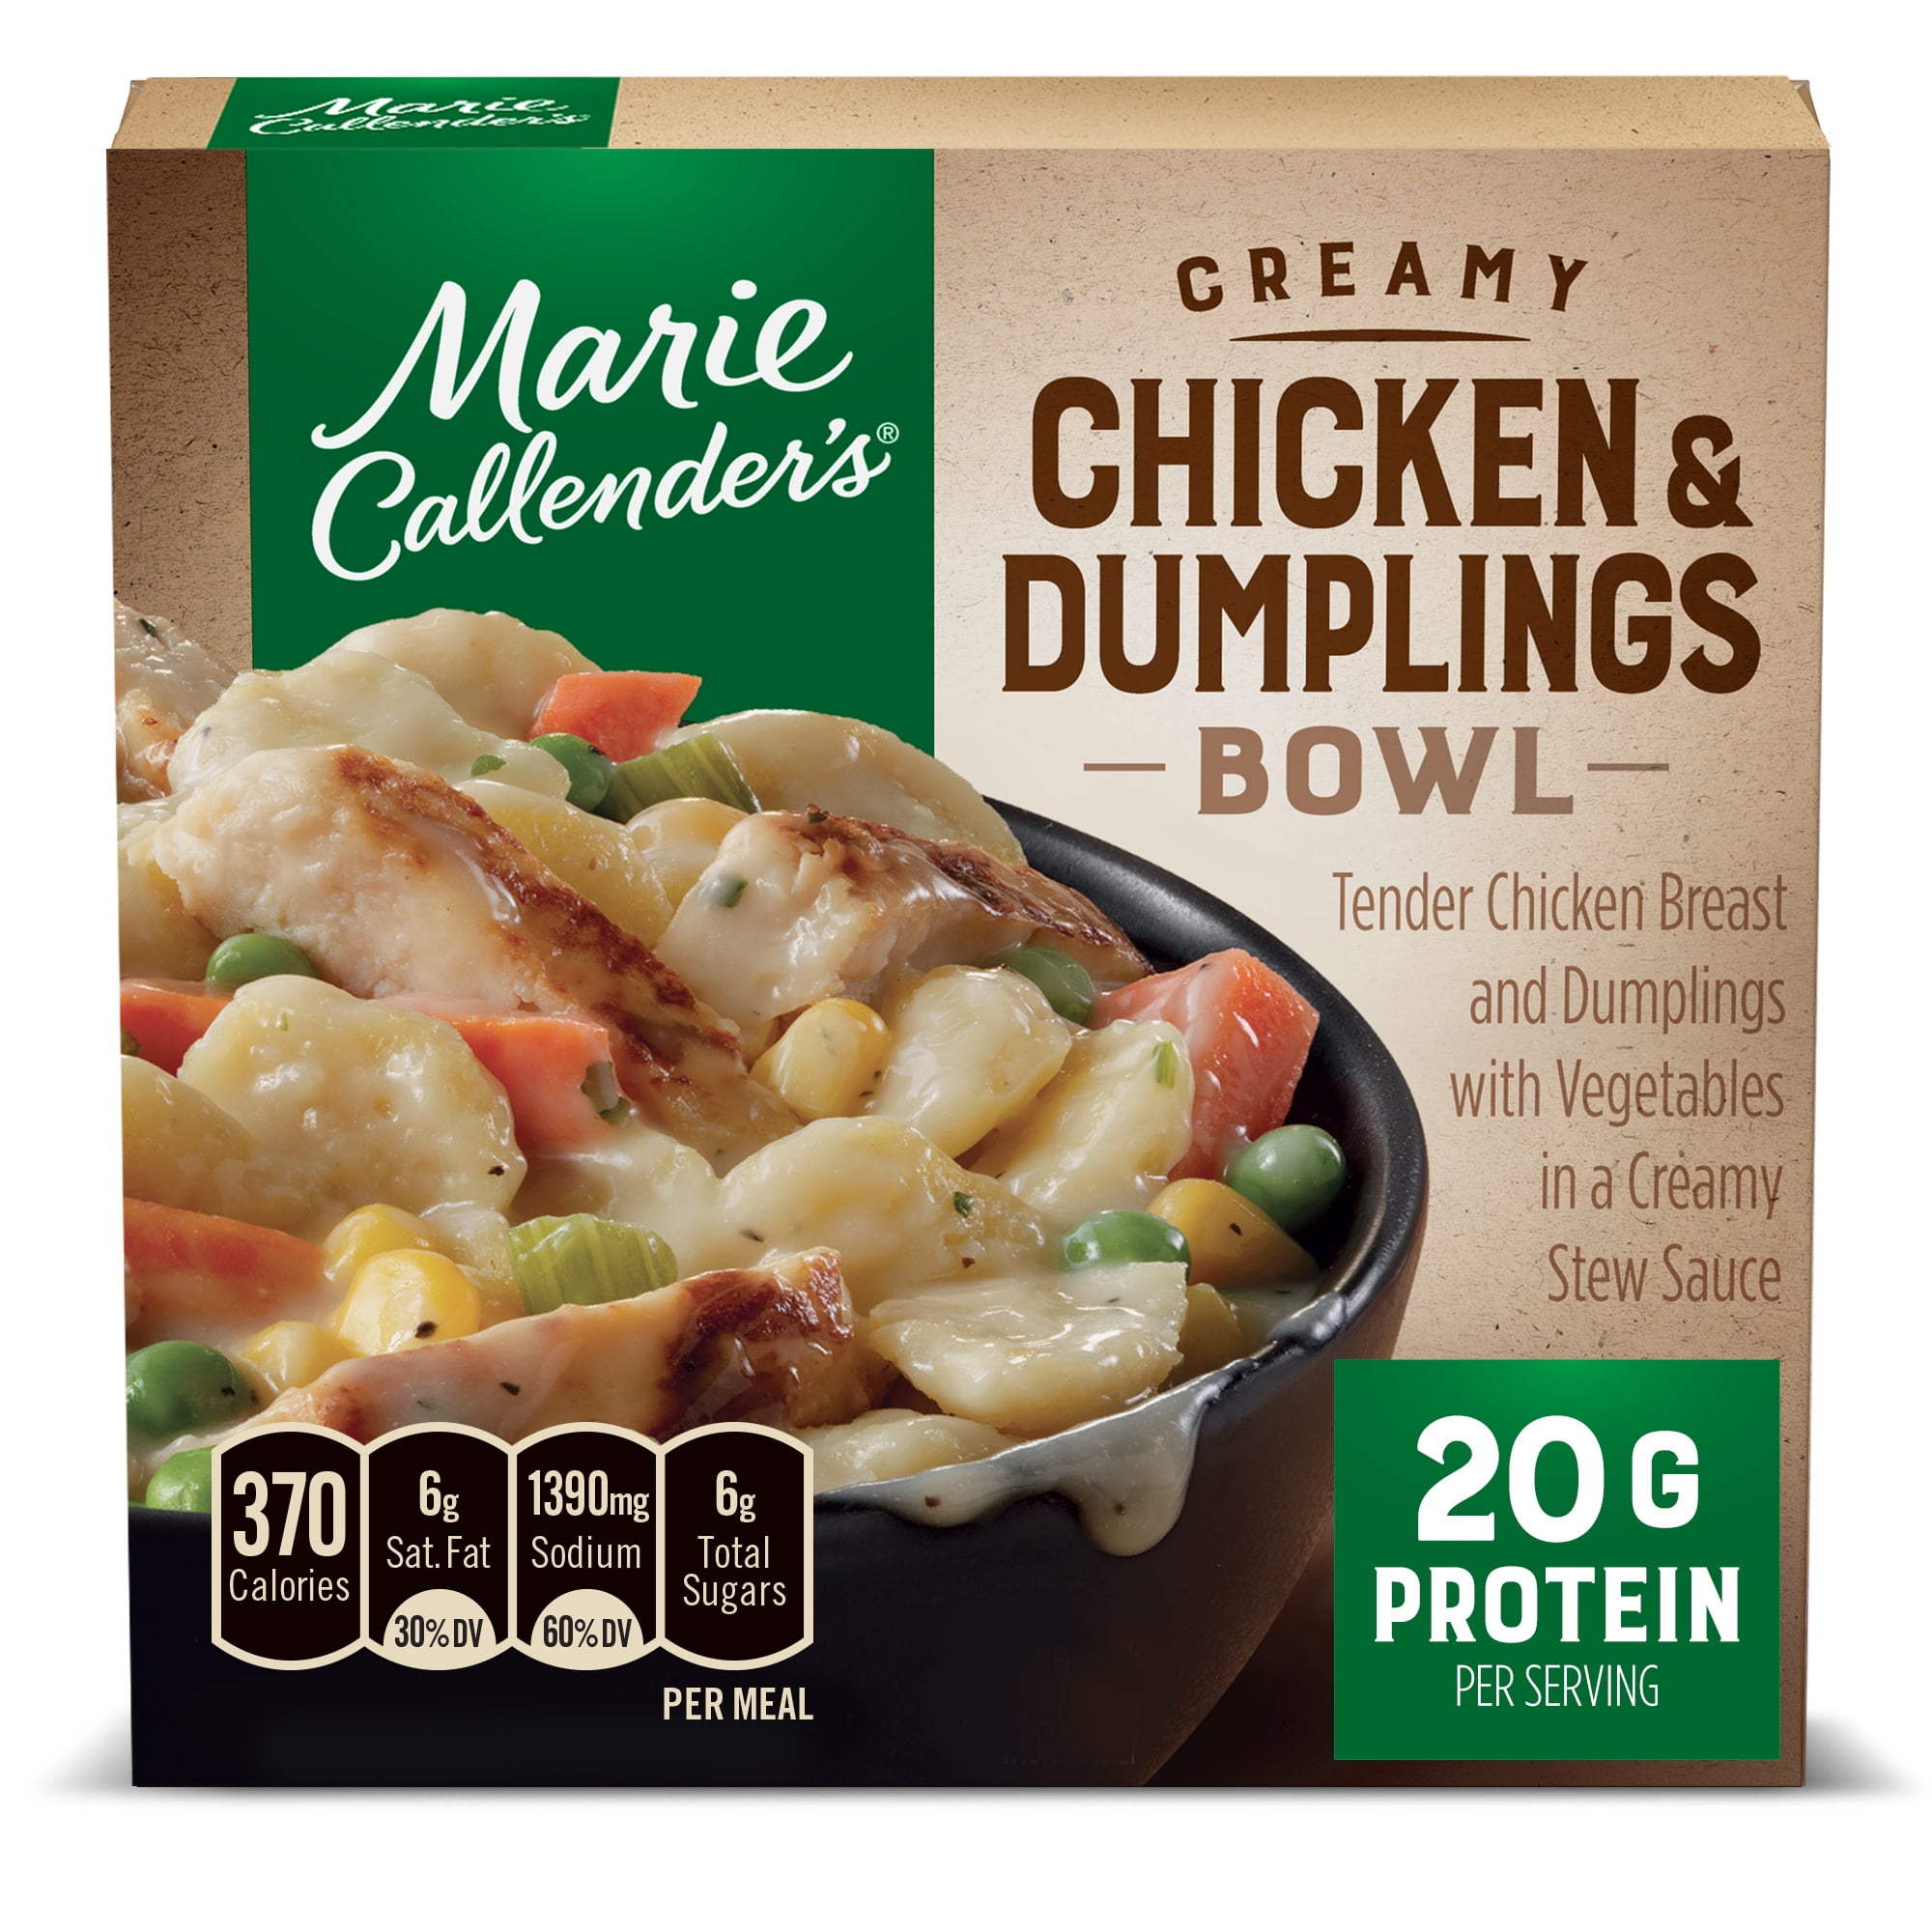 Trader Joe's Chicken Soup Dumplings : r/frozendinners